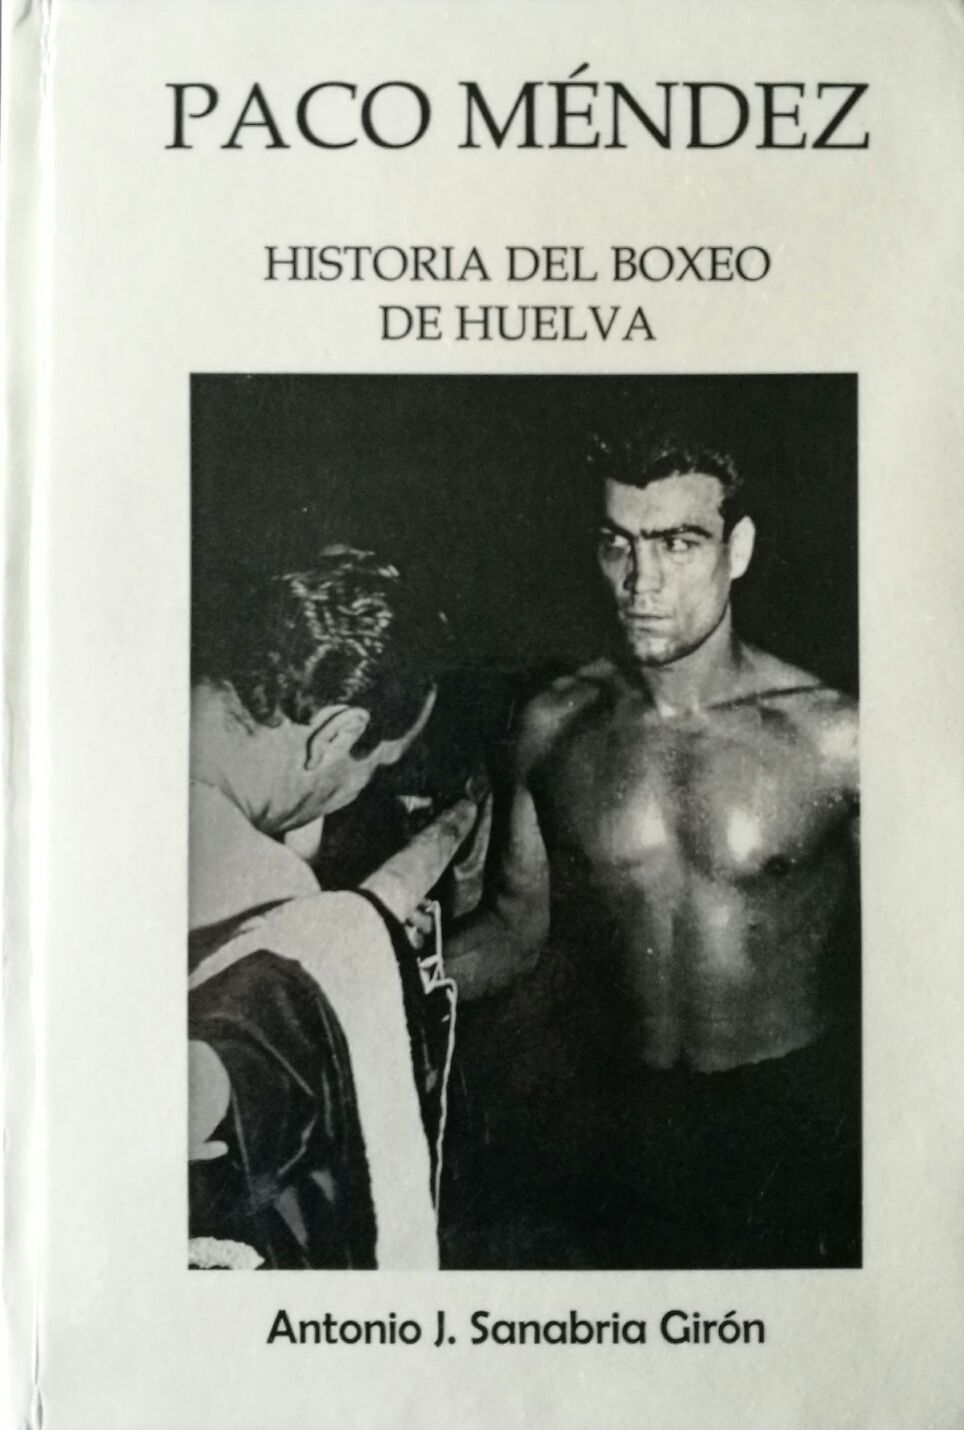 Historia del boxeo de Huelva